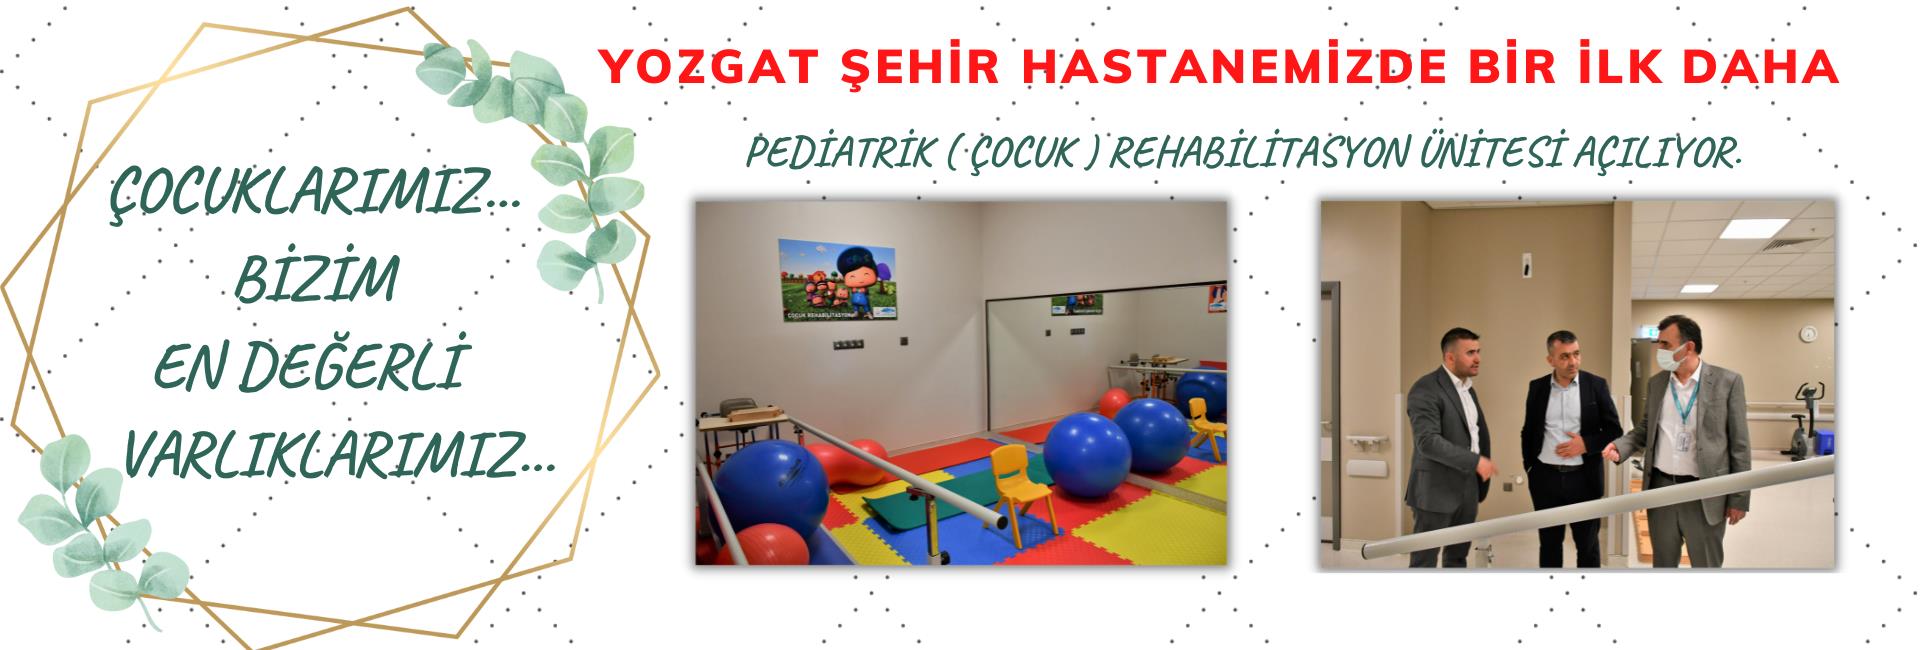 Yozgat Şehir Hastanemizde Bir İlk Daha  ‘Pediatrik (Çocuk) Rehabilitasyon Ünitesi’ Açılıyor